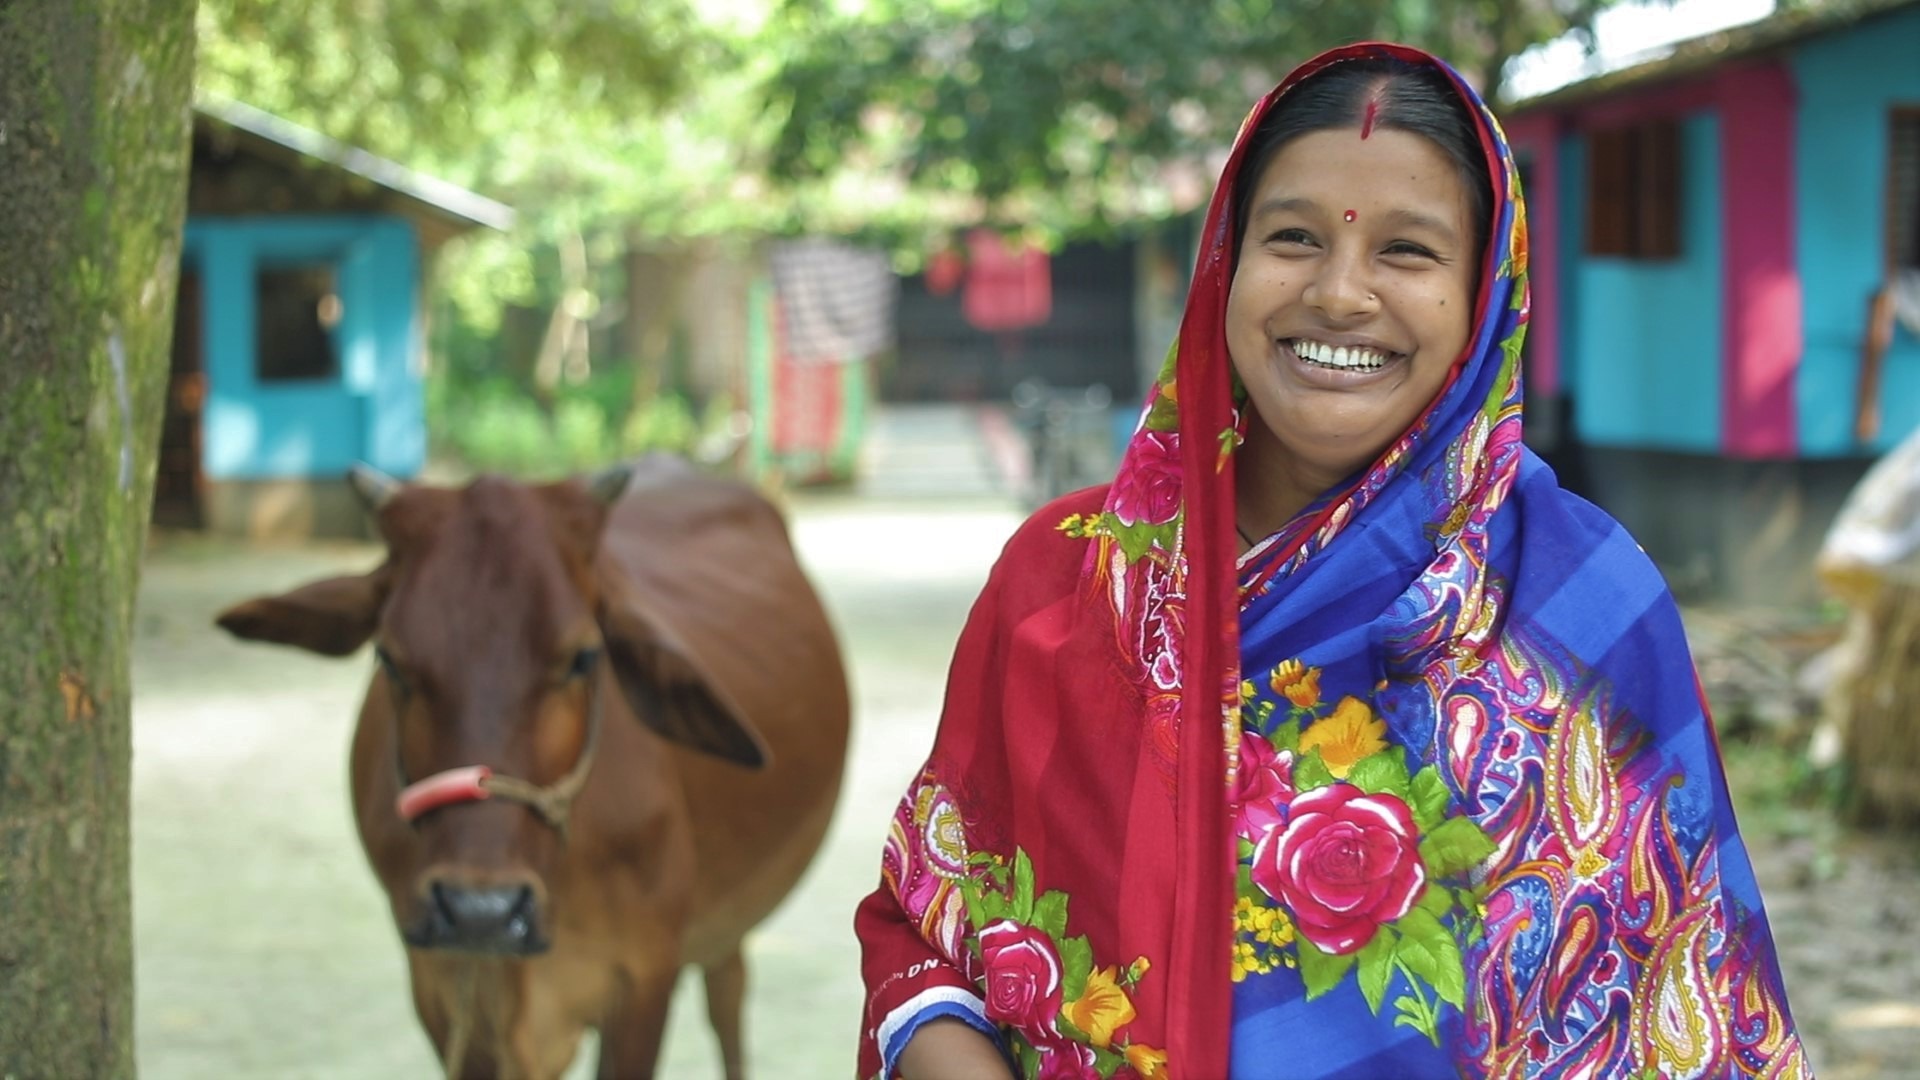 Bangladesh-LPIN-fodder entrepreneur